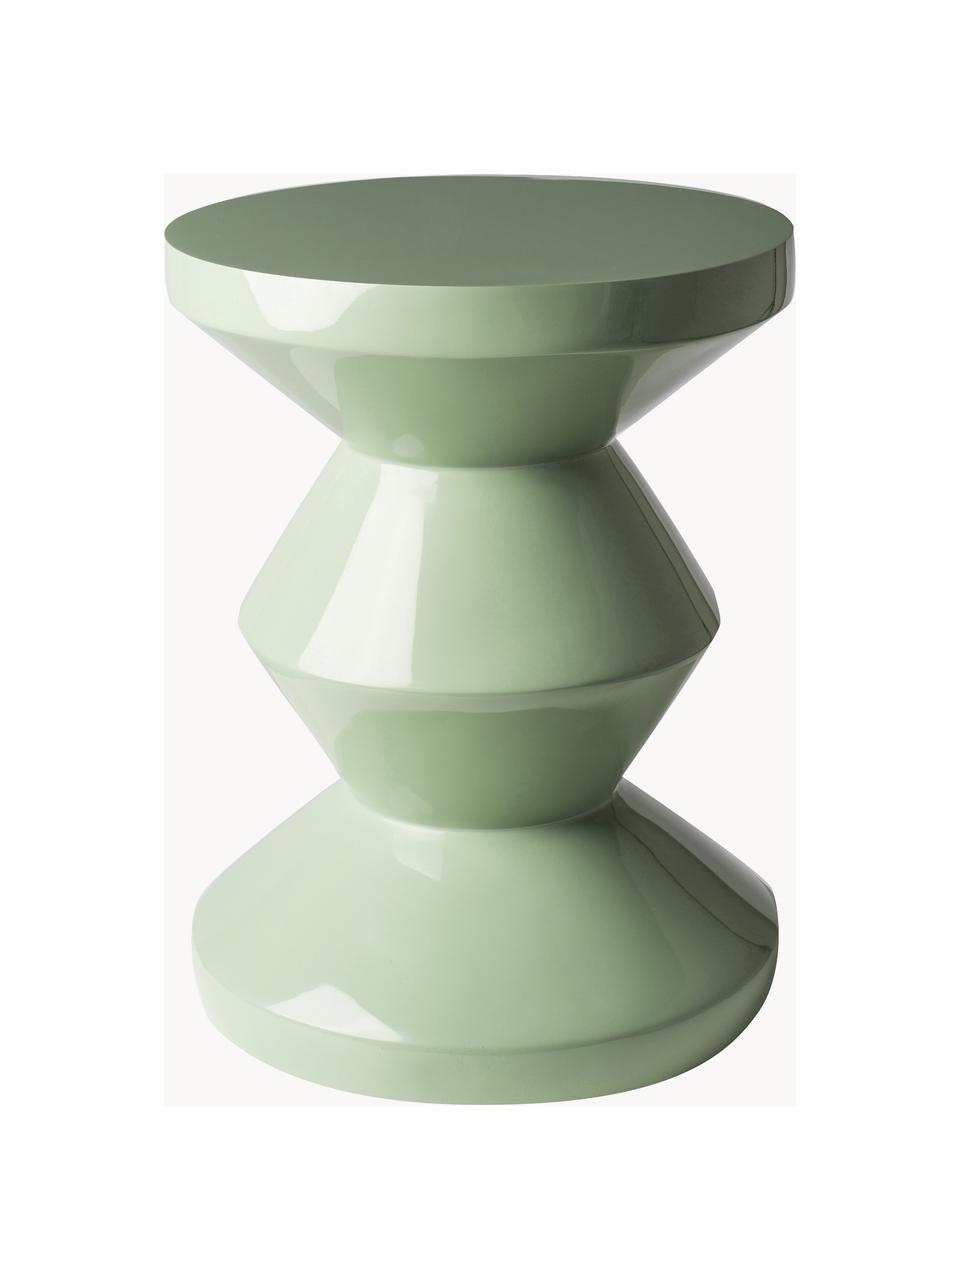 Runder Beistelltisch Zig Zag, Kunststoff, lackiert, Salbeigrün, Ø 36 x H 46 cm